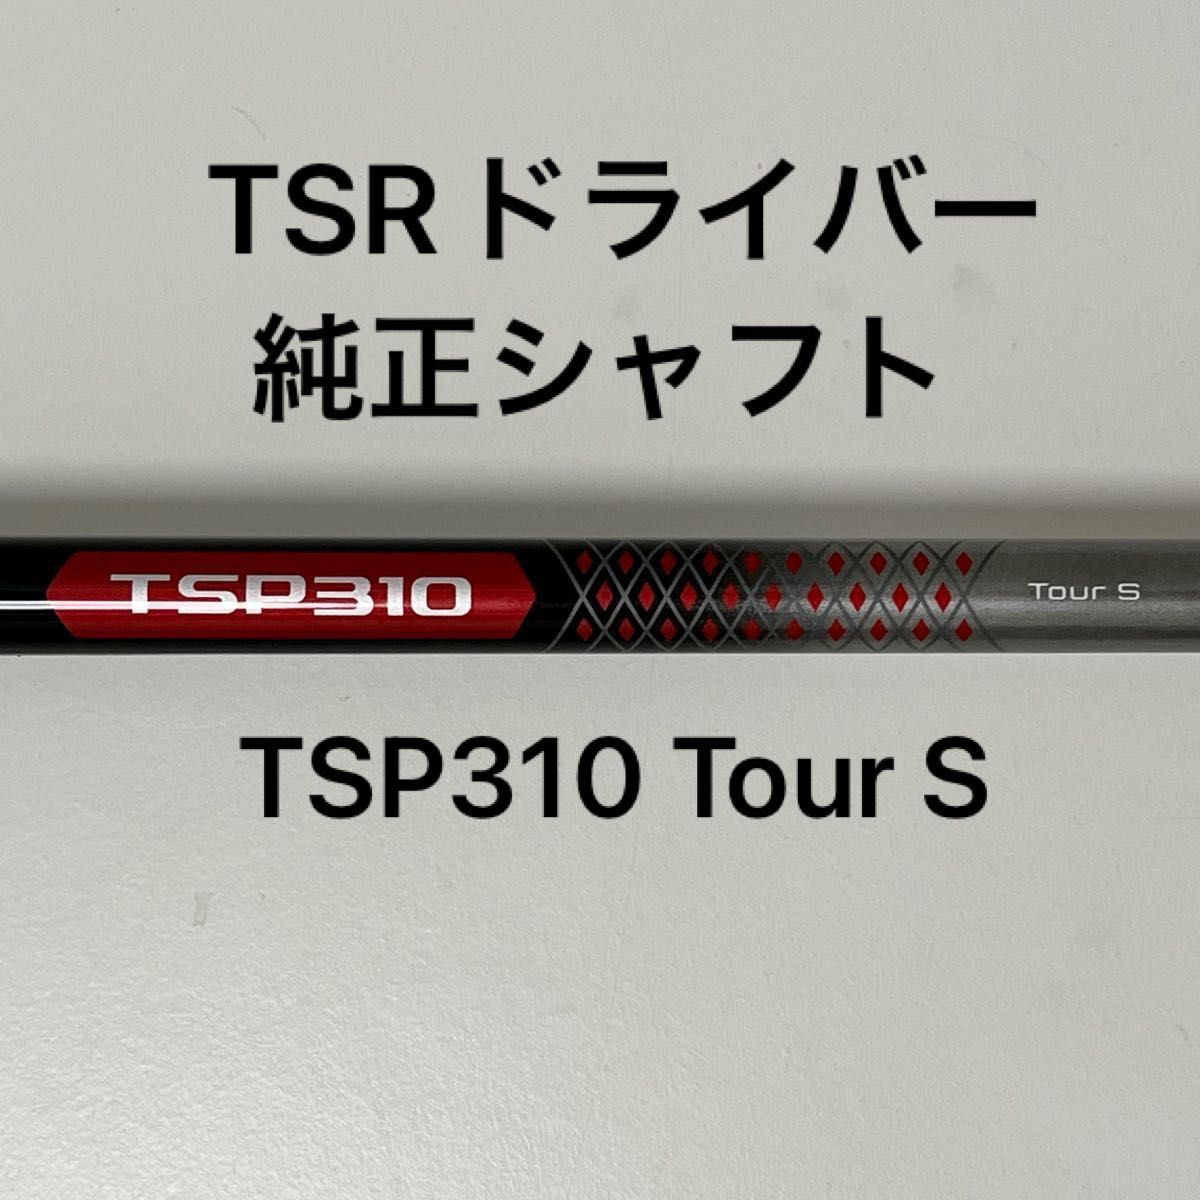 話題の人気 タイトリスト TSRドライバー 純正TSP310 TourS asakusa.sub.jp